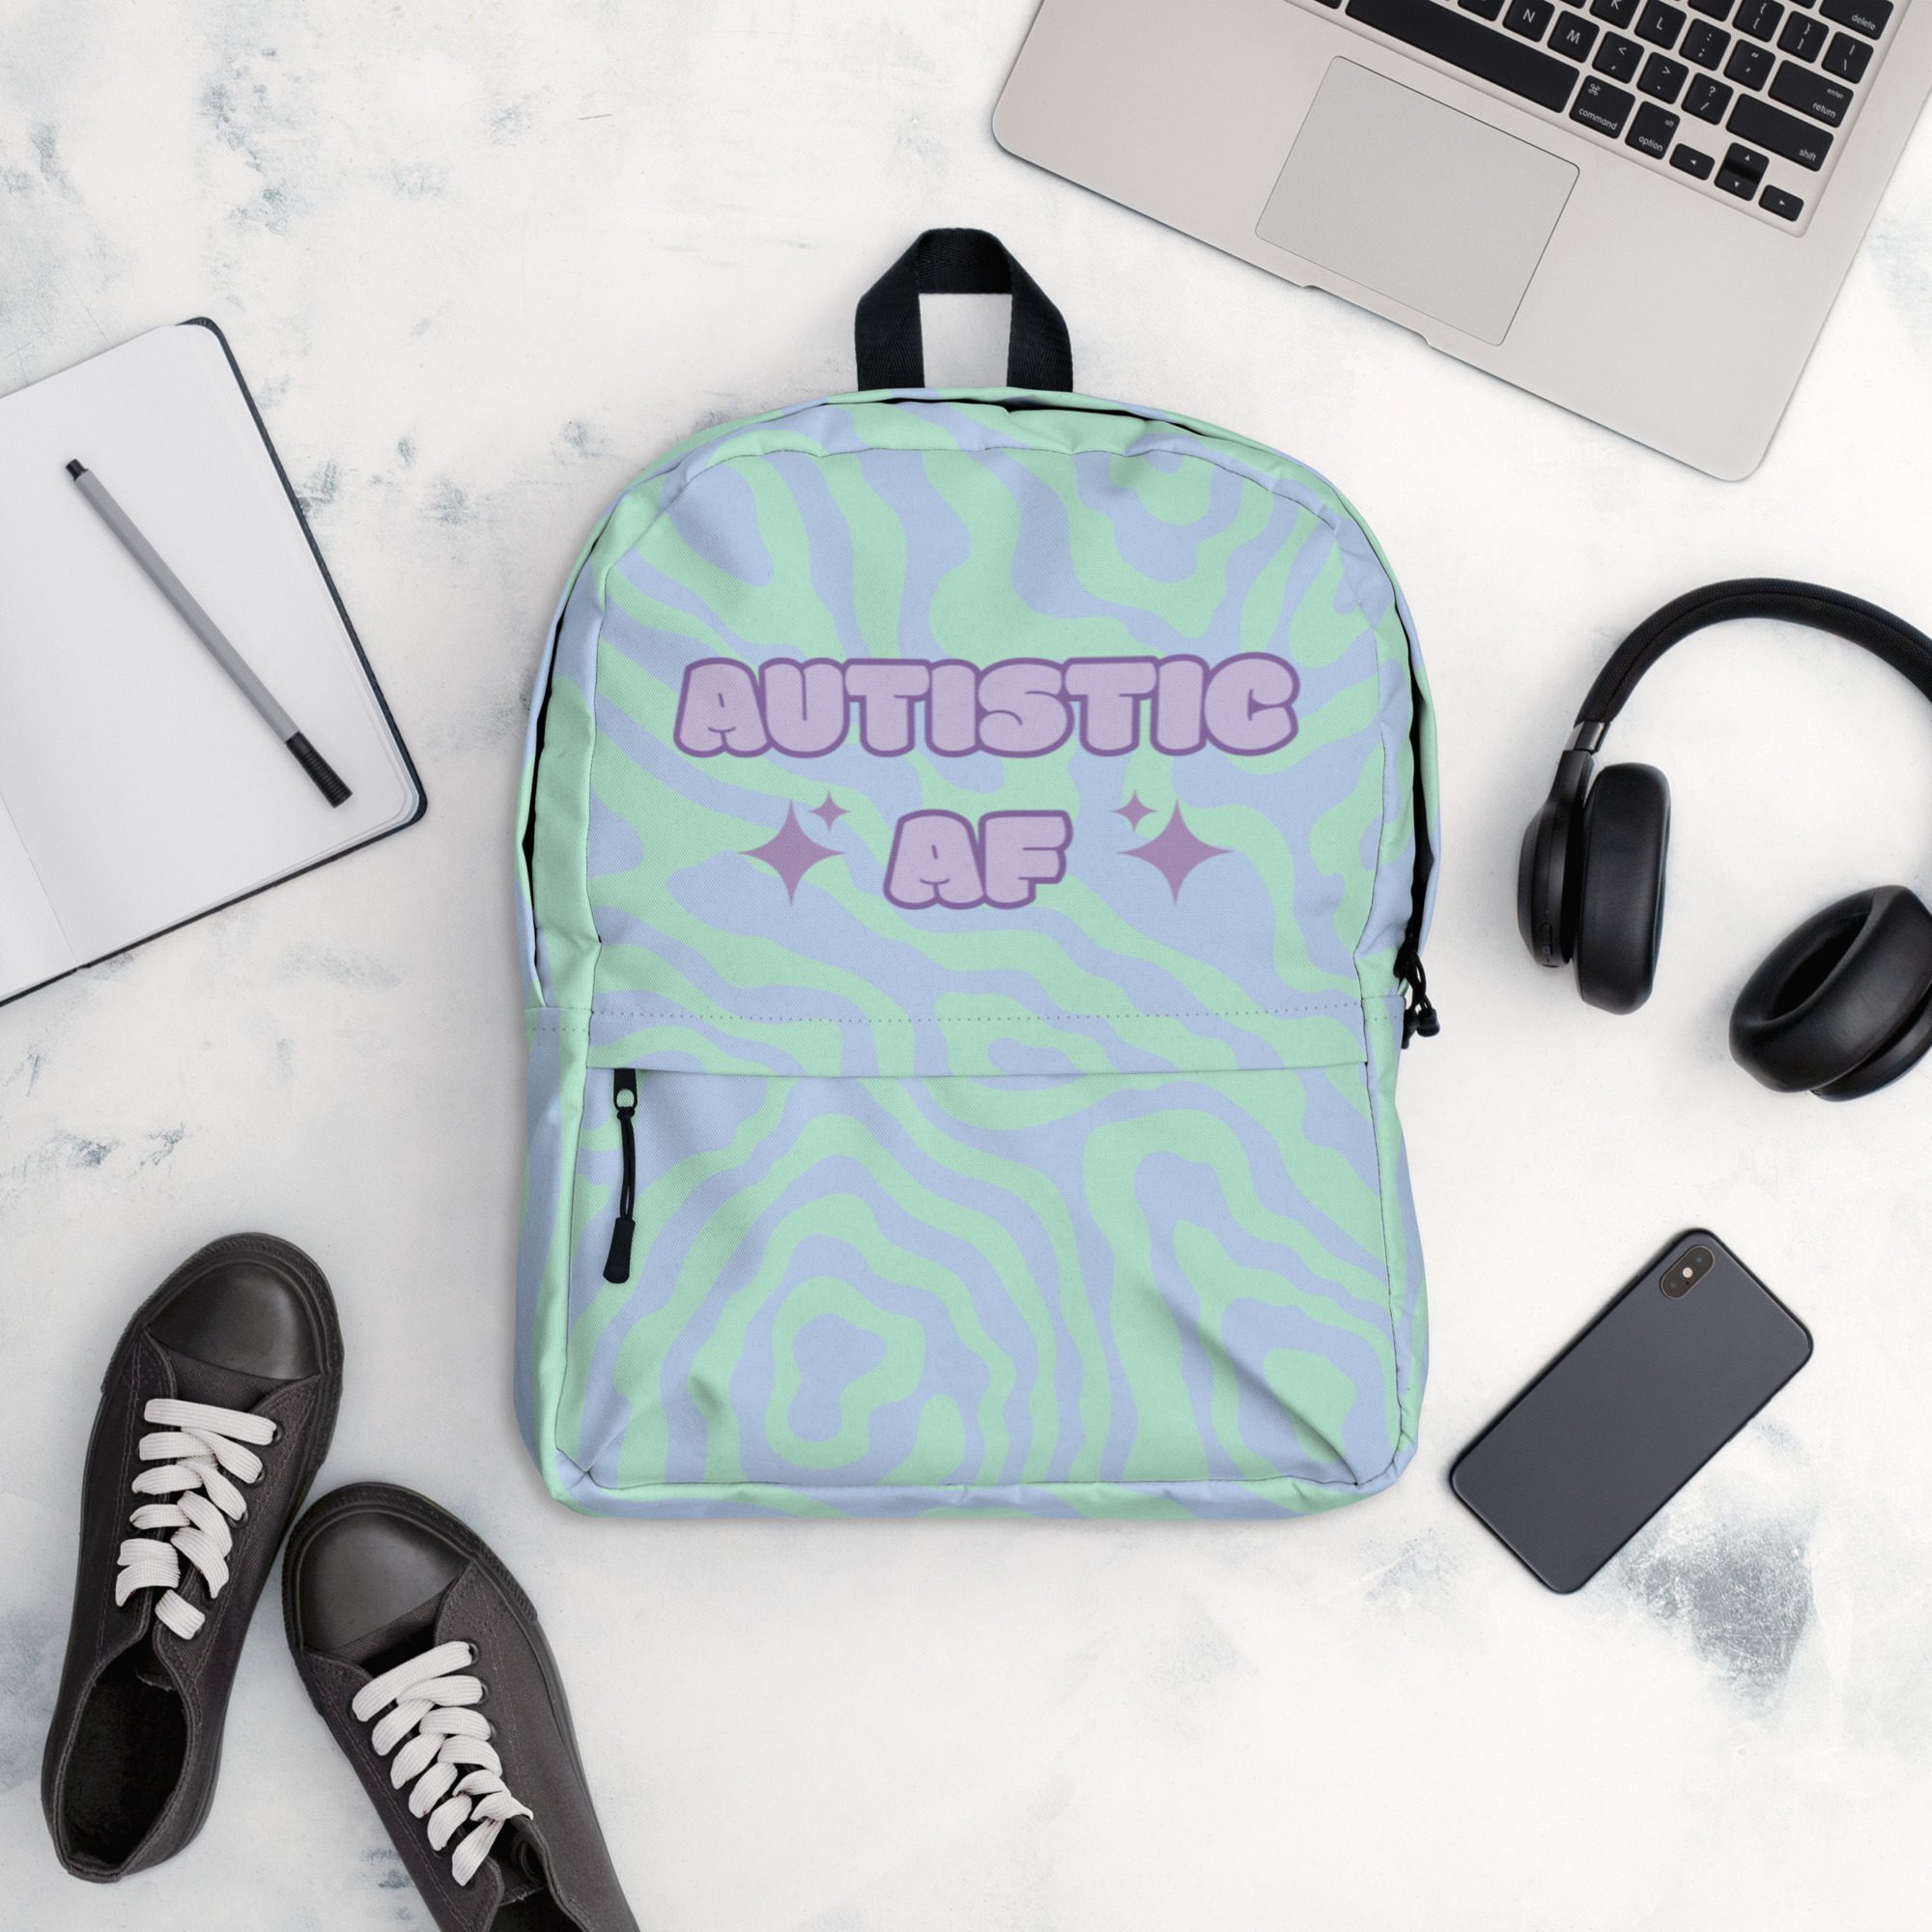 Autistic AF Backpack